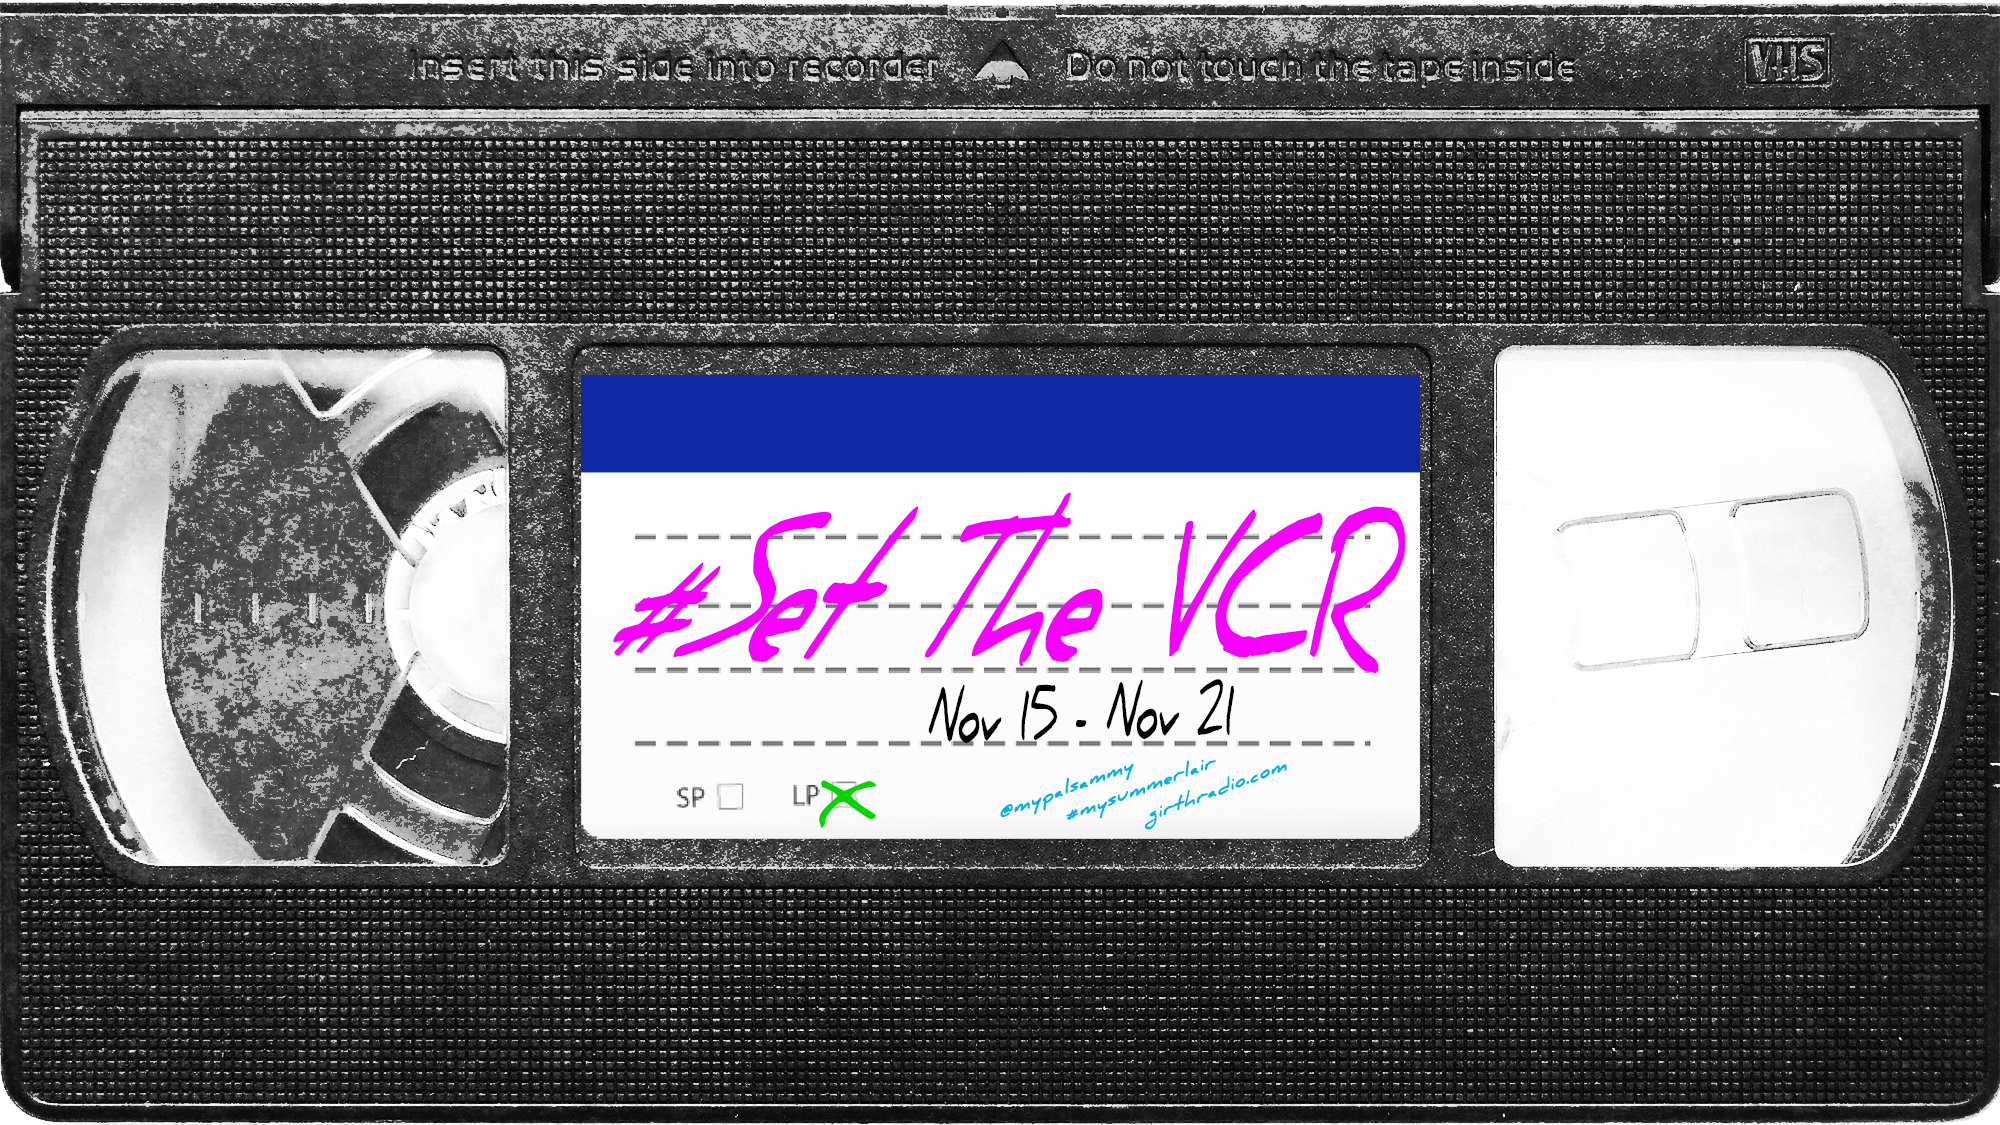 #SetTheVCR: November 15-21, 2020